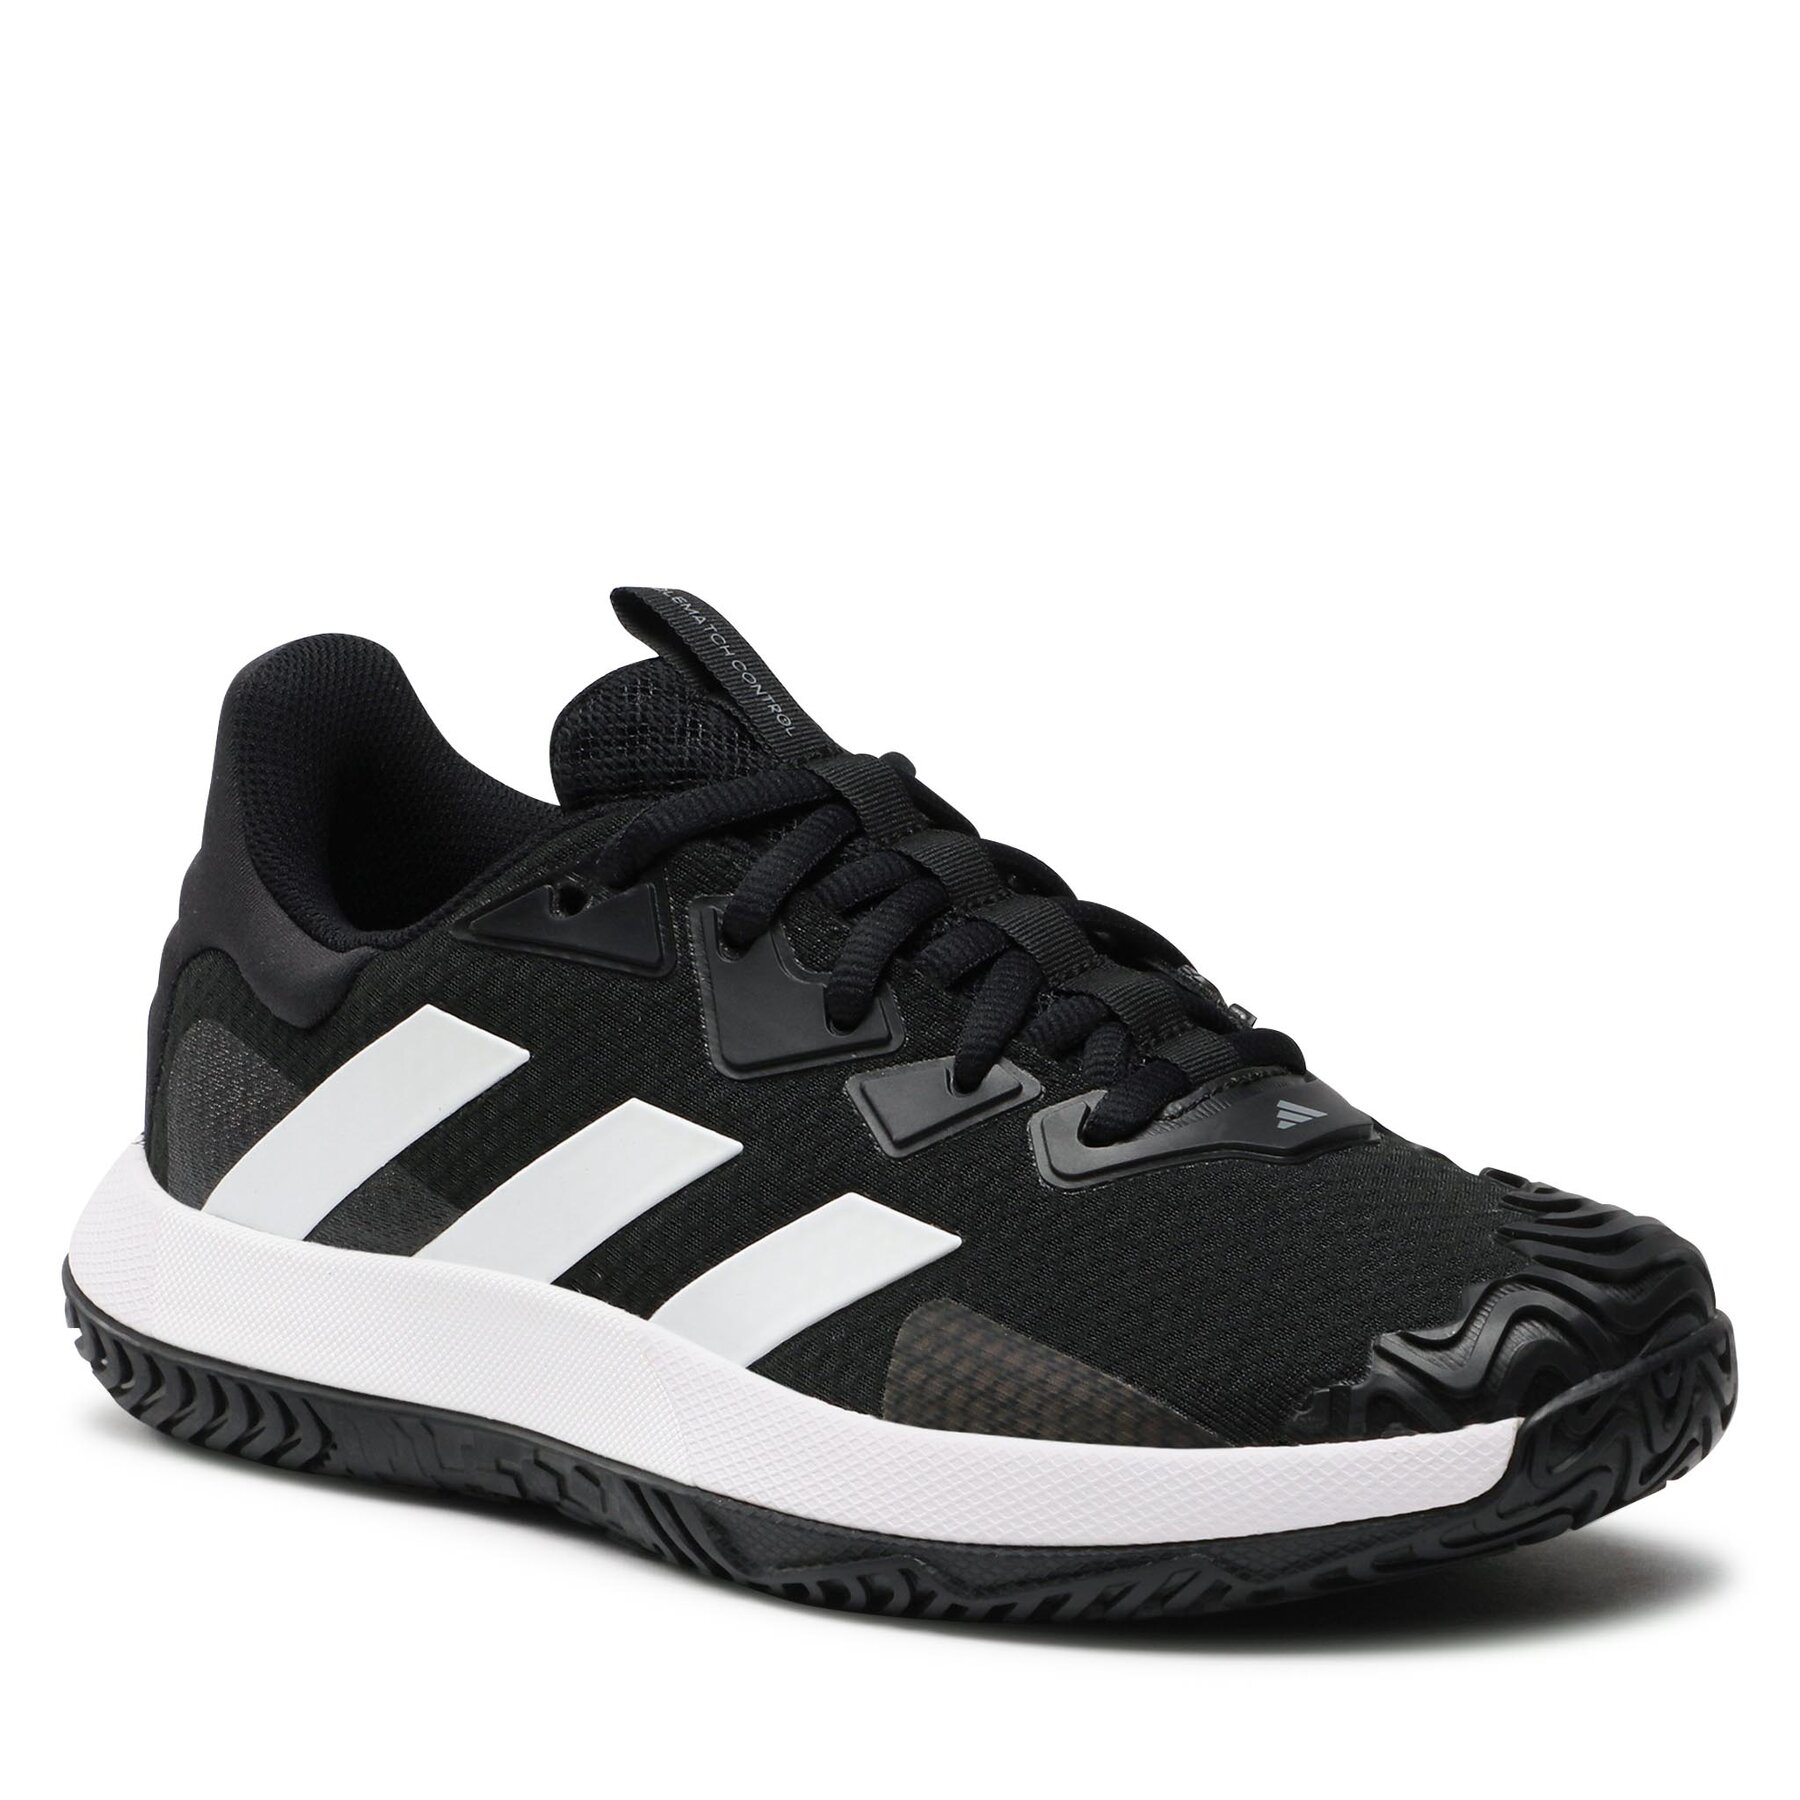 Čevlji adidas SoleMatch Control Tennis Shoes ID1498 Cblack/Ftwwht/Grefou